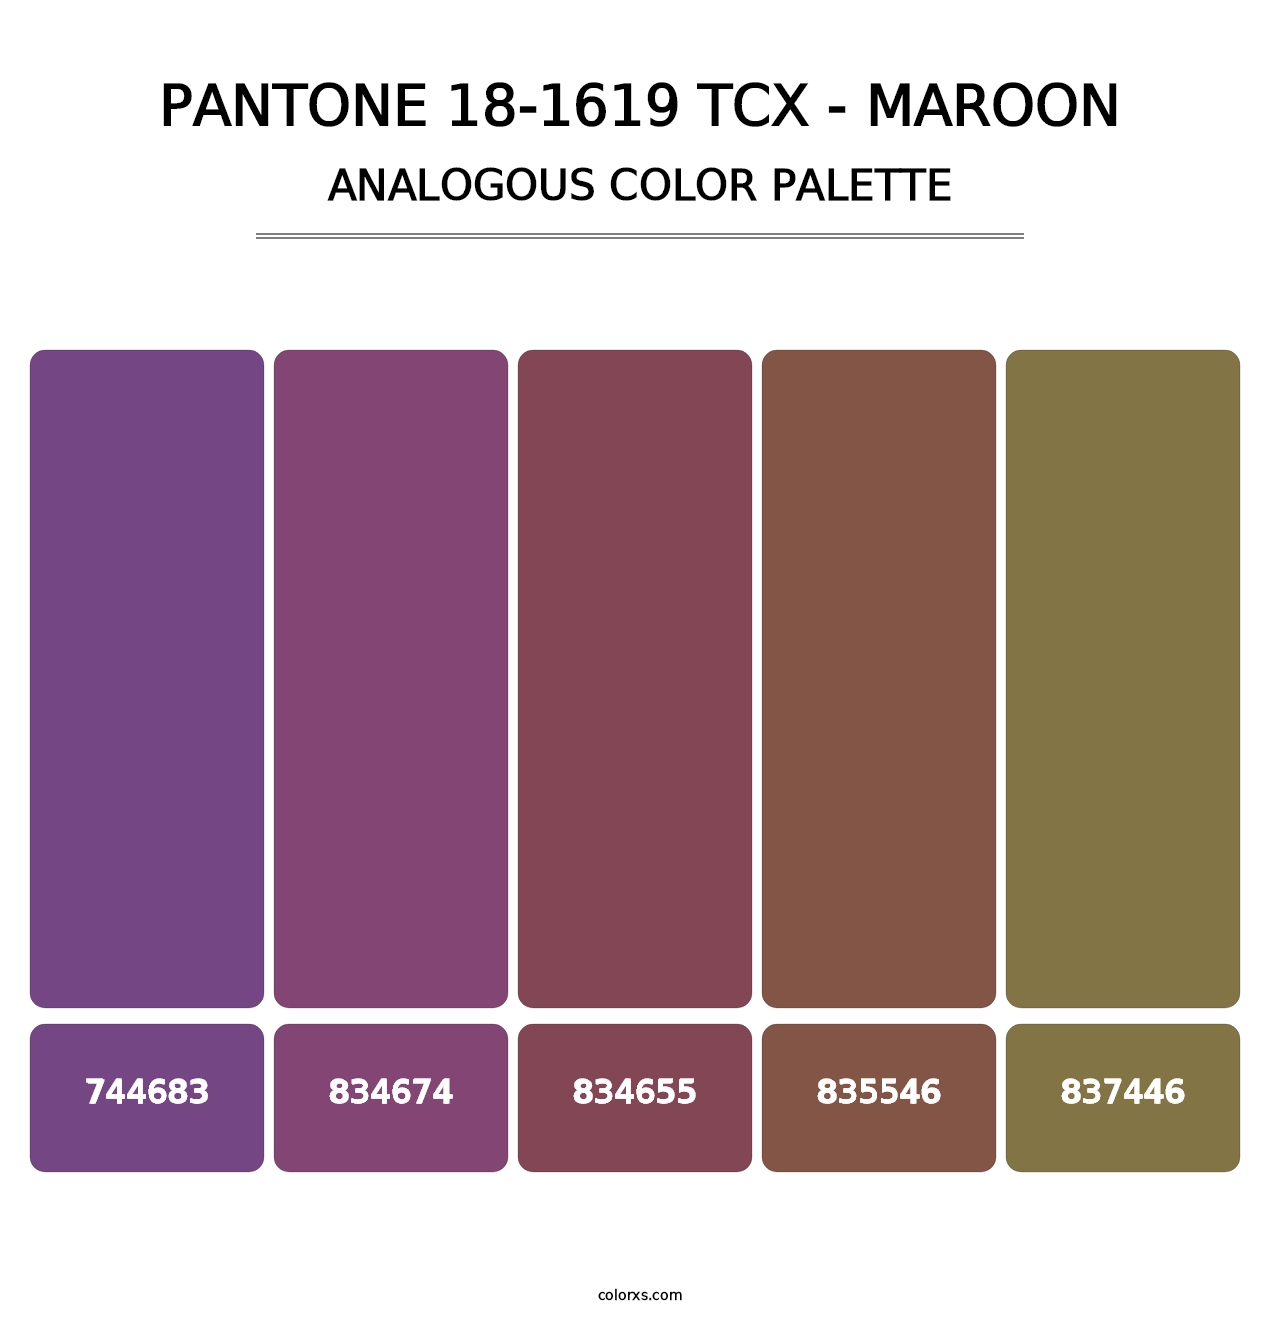 PANTONE 18-1619 TCX - Maroon - Analogous Color Palette